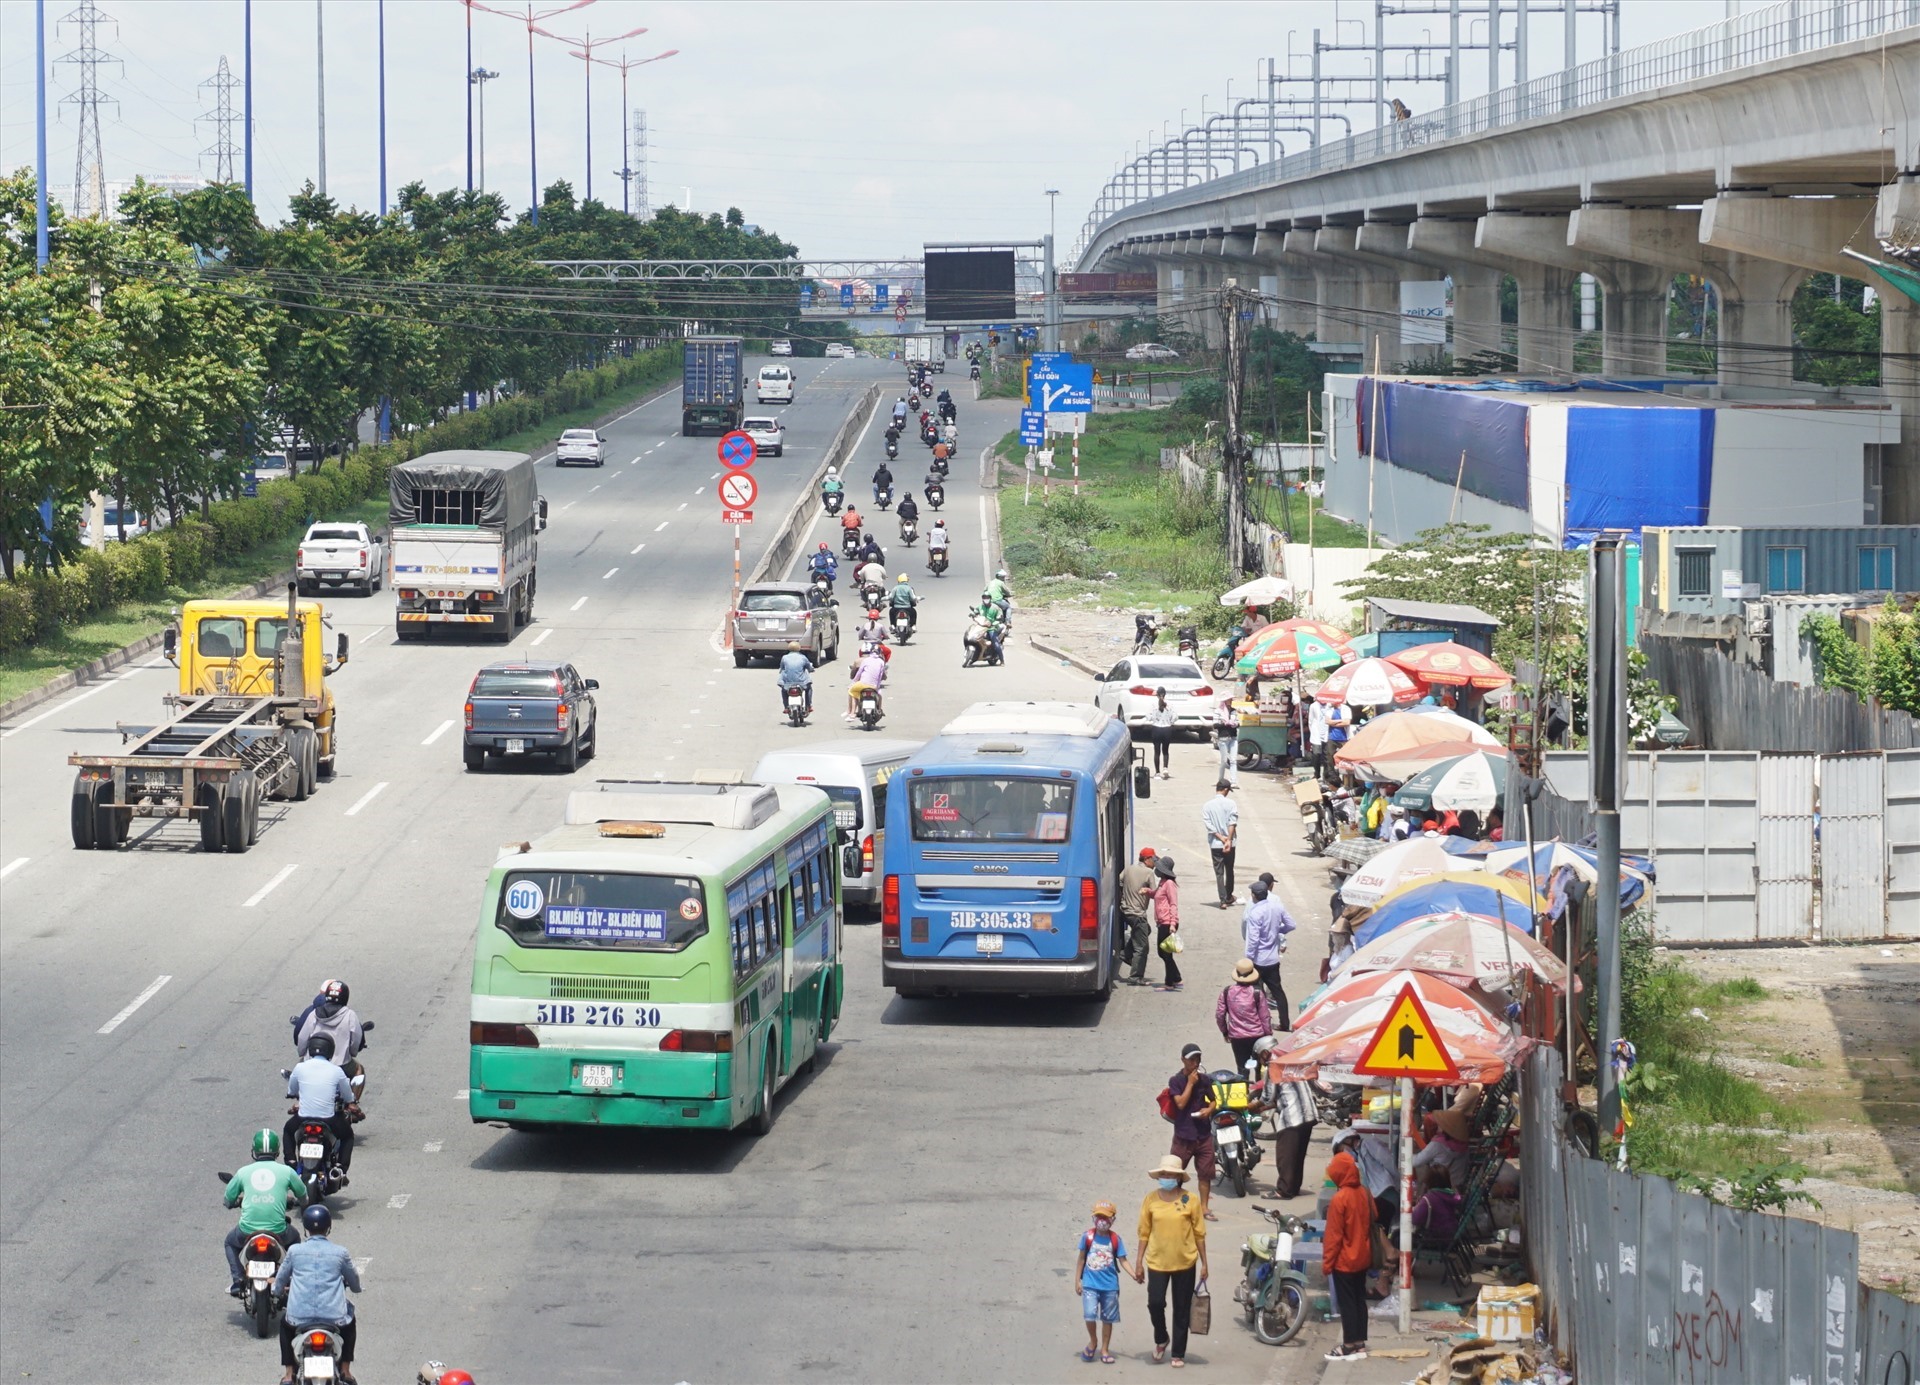 Hệ thống xe buýt dọc Xa lộ Hà Nội sẽ được tổ chức lại để hút khách đi Metro số 1.  Ảnh: Minh Quân